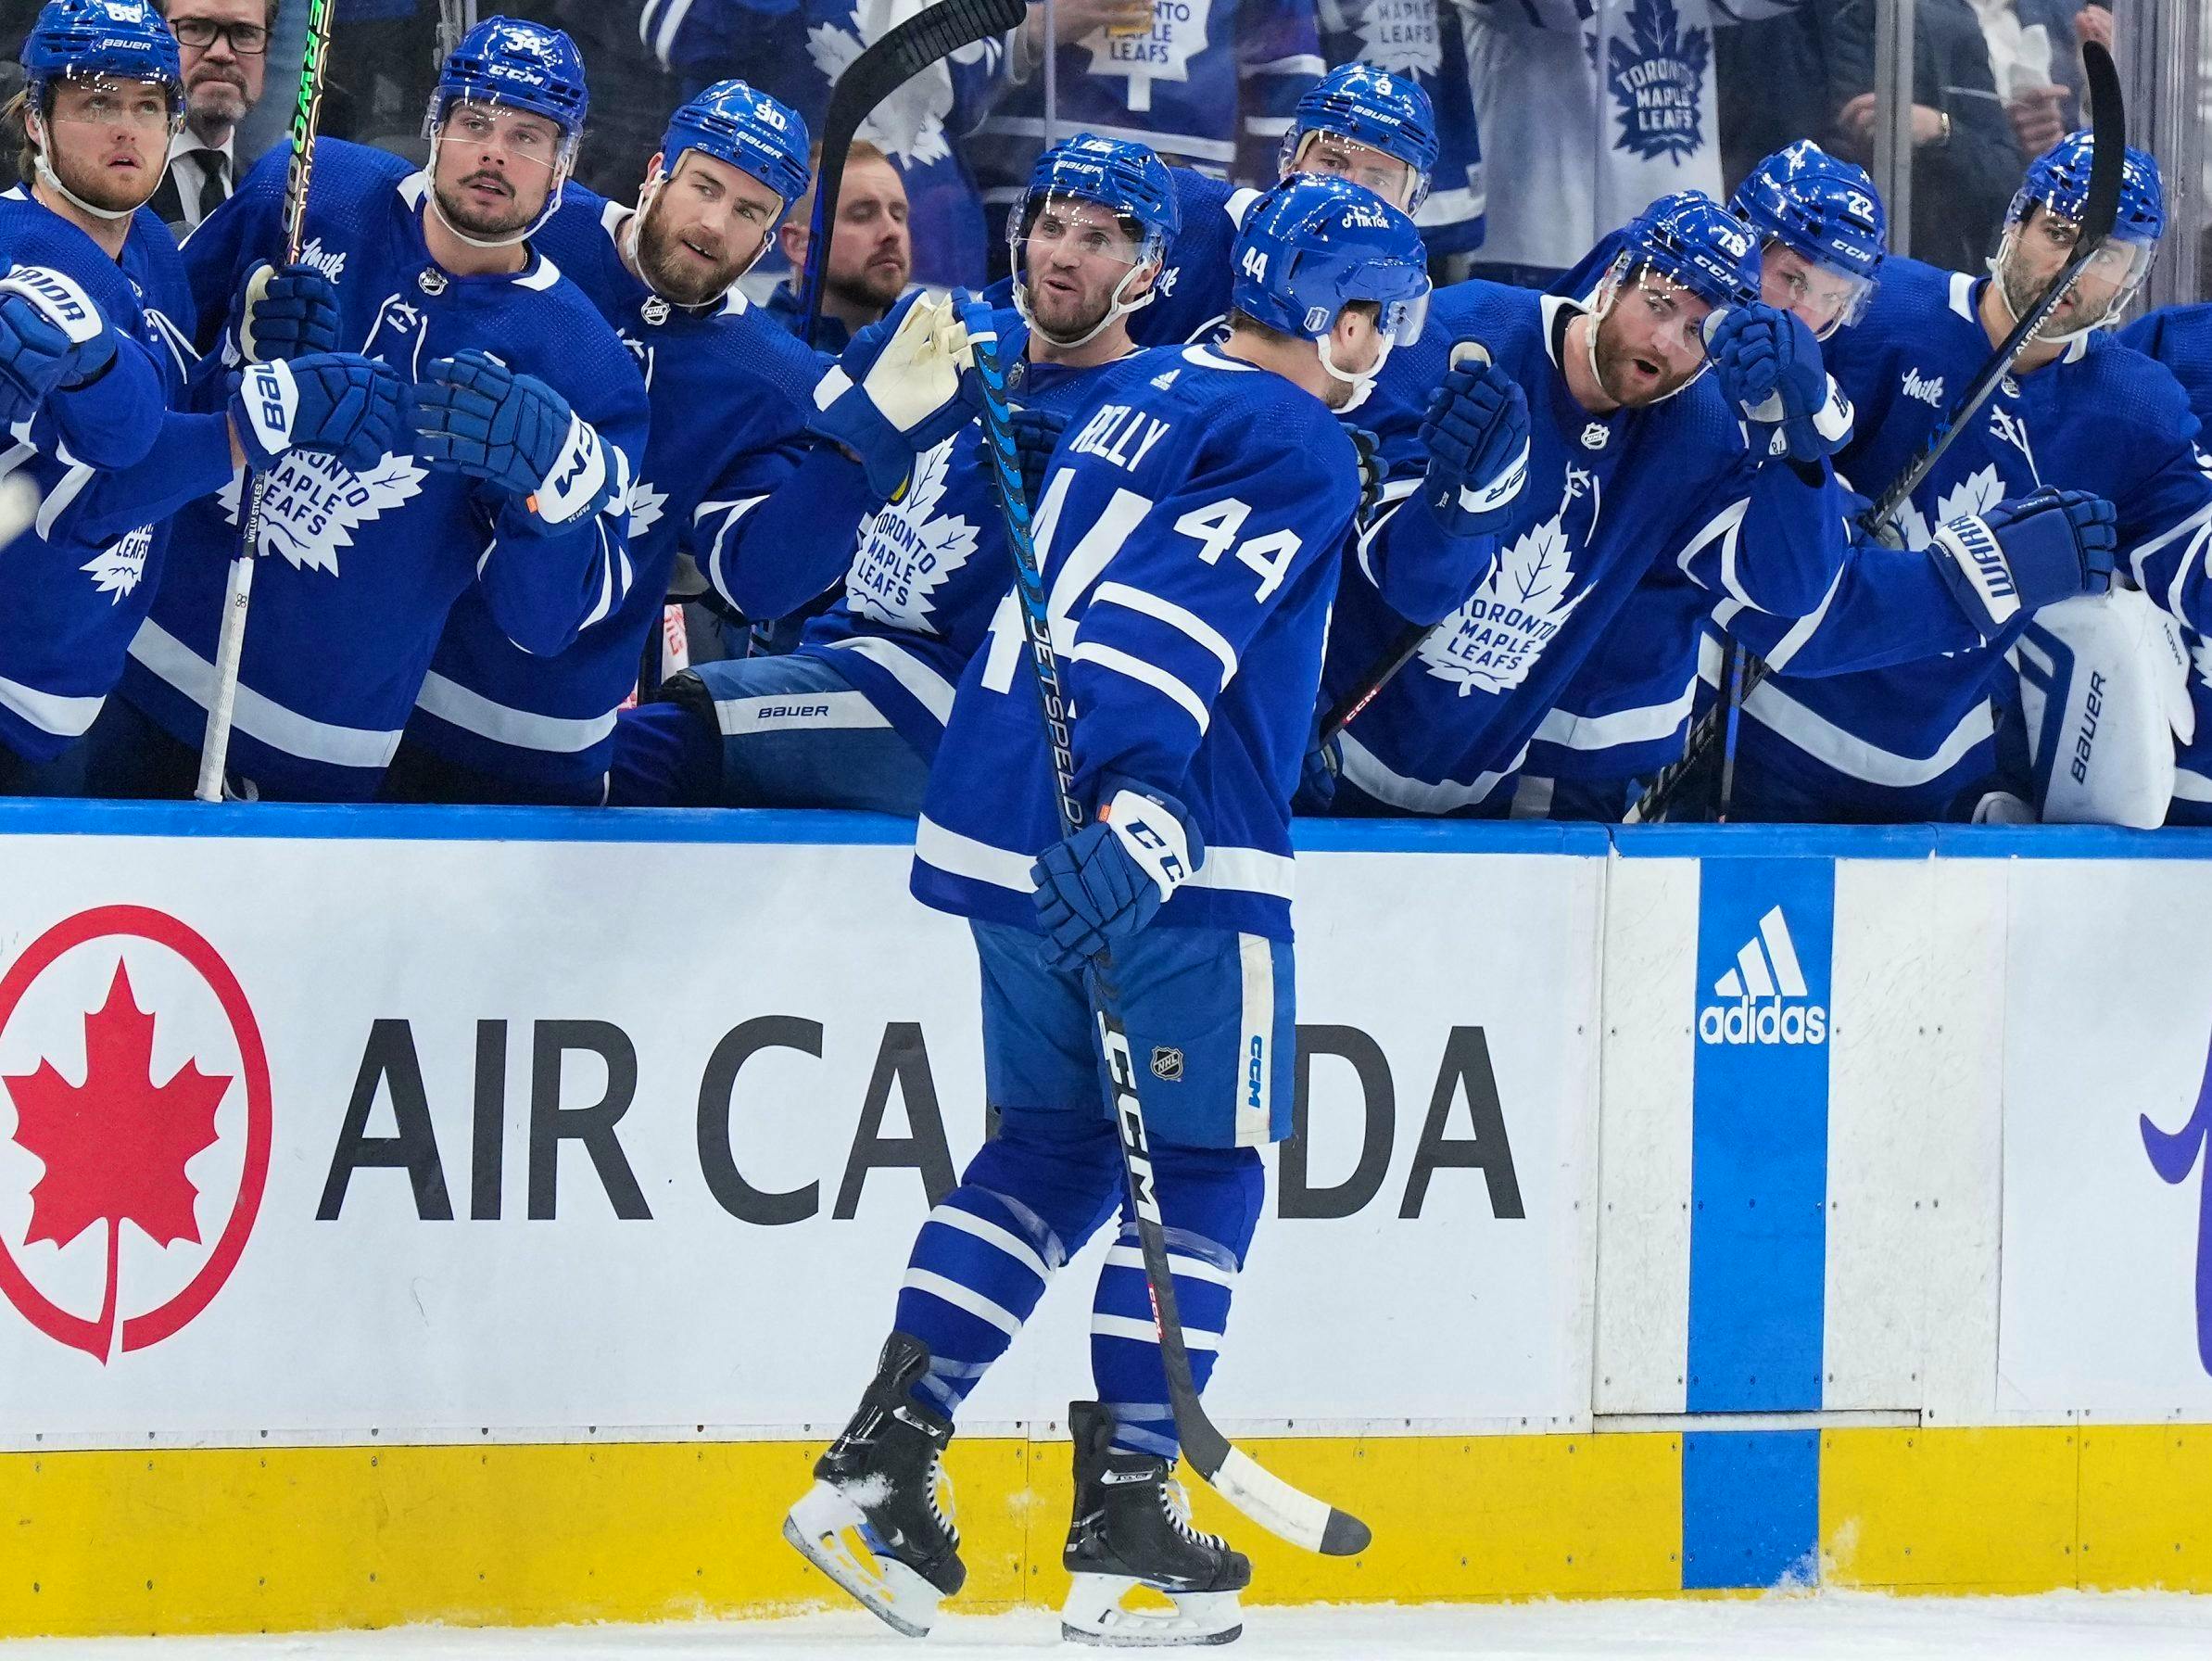 Maple Leafs win 4-1, end Lightning's 5-game winning streak